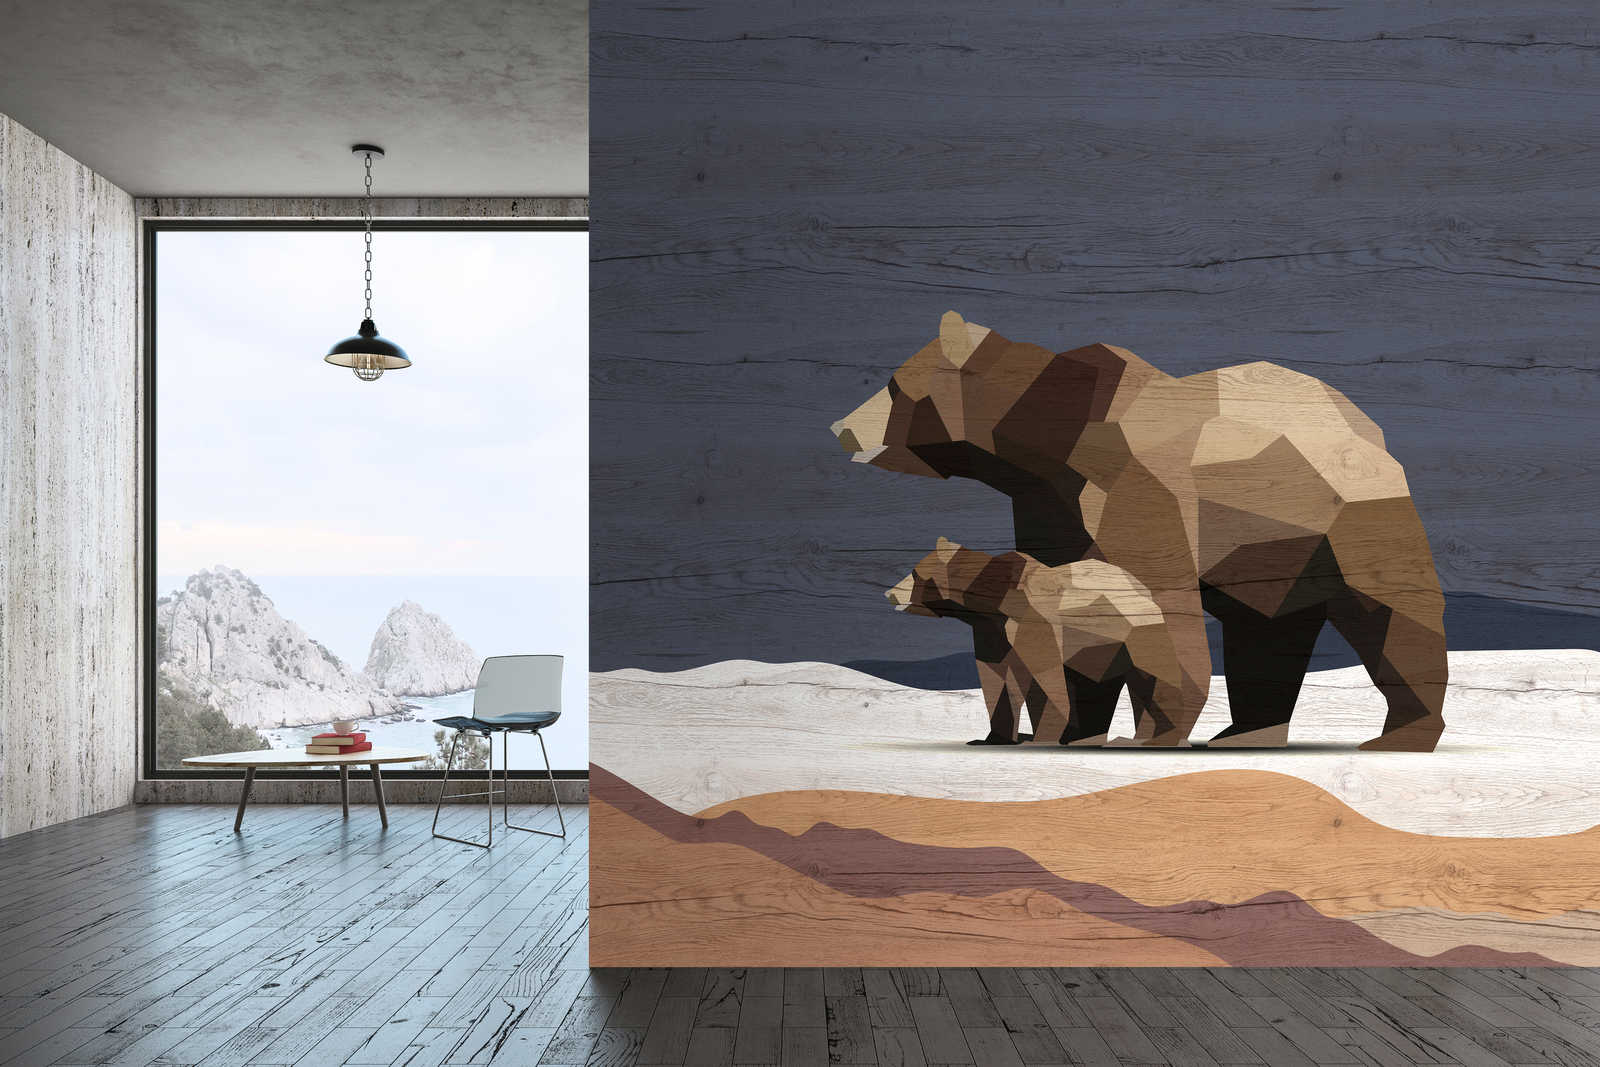             Yukon 3 – Fototapete Bären Familie im Facetten Design & Holzoptik
        